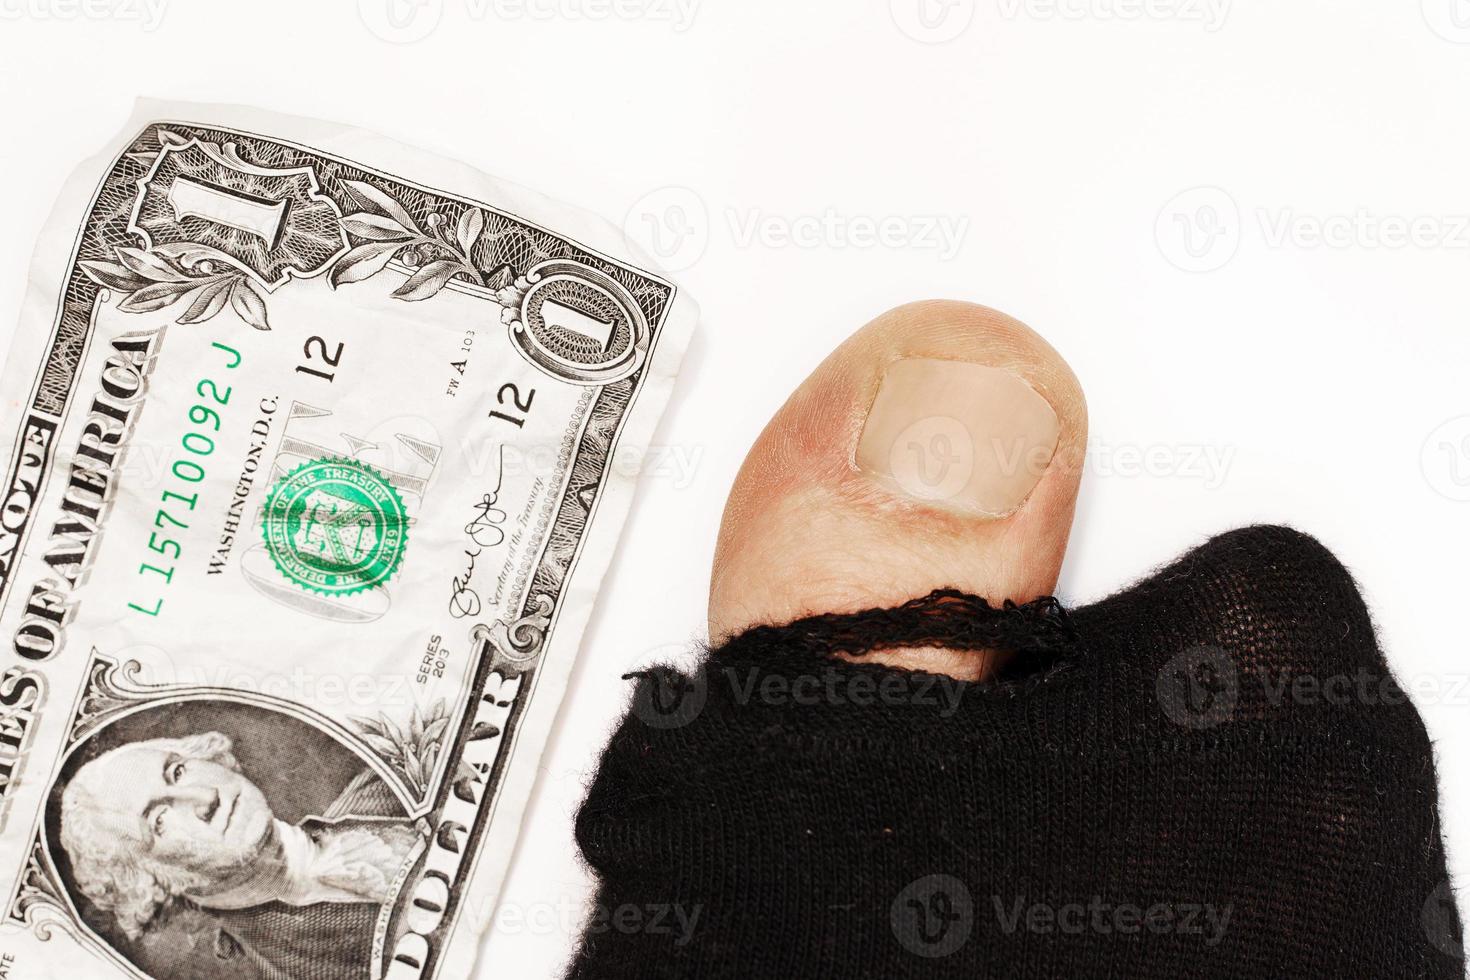 Geld in Socken verstecken ist eine unsichere - Lizenzfreies Foto #23506824